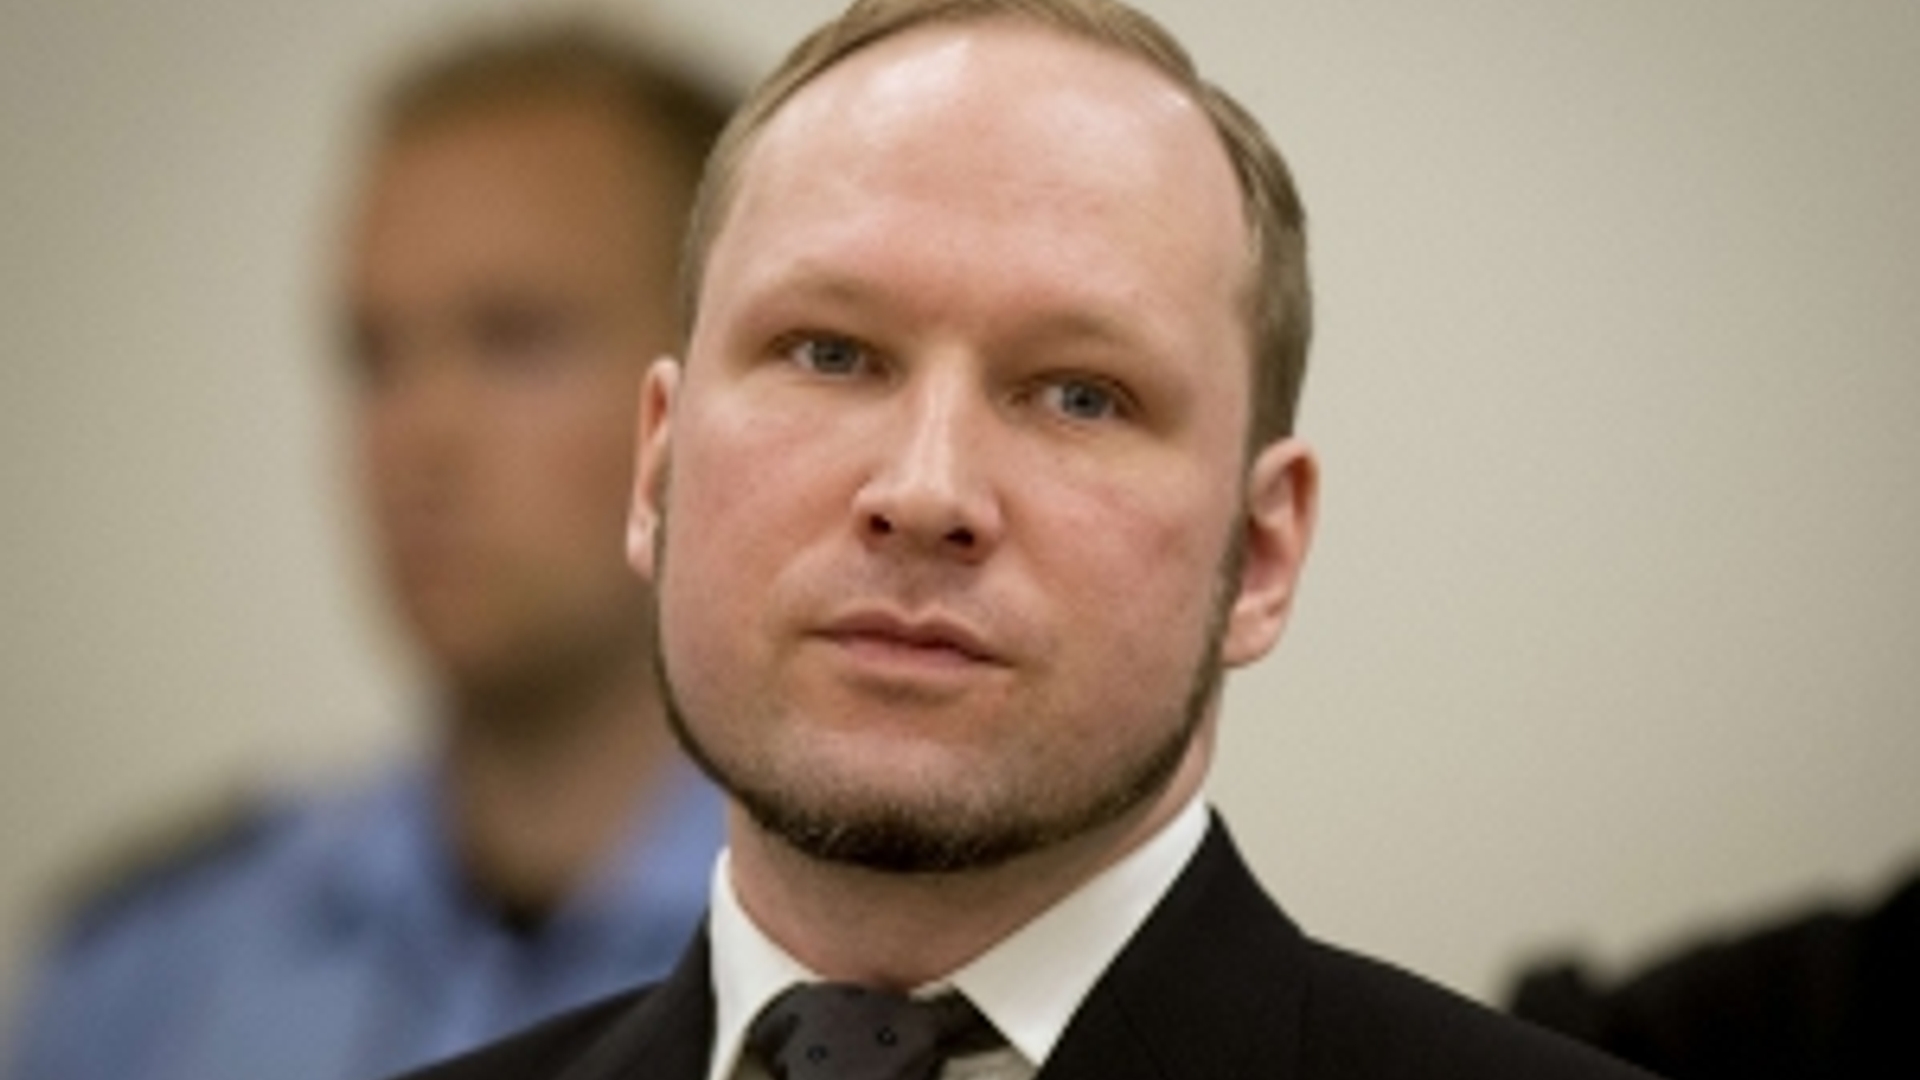 ANP-Breivik_uitspraak300.jpg